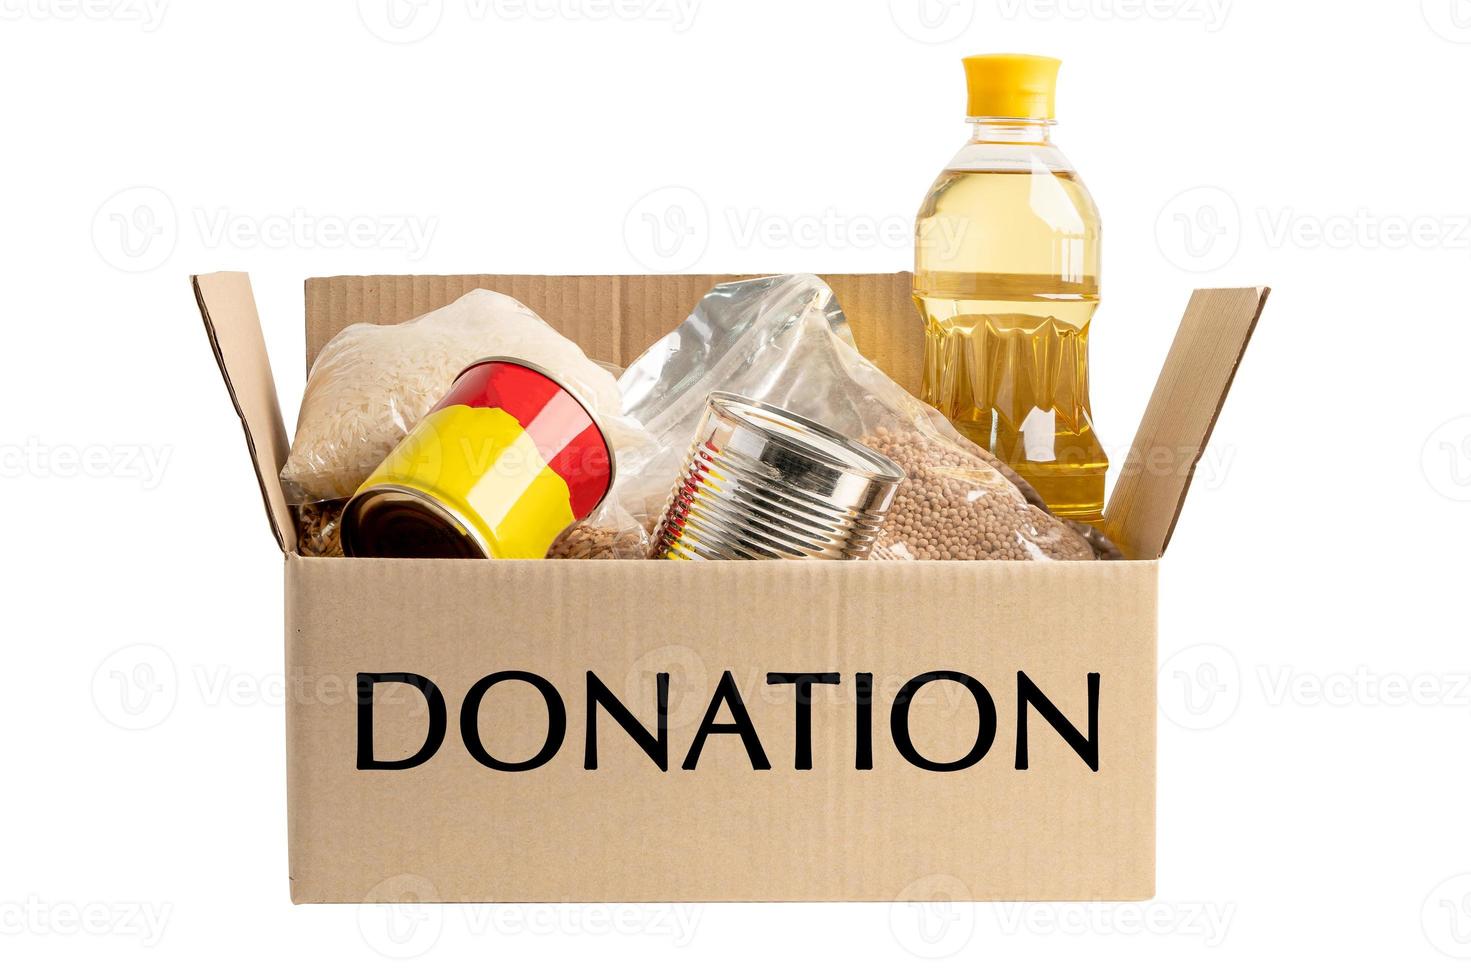 caixa de doação ajuda alimentar para pessoas pobres no mundo isolado no fundo branco com traçado de recorte. foto